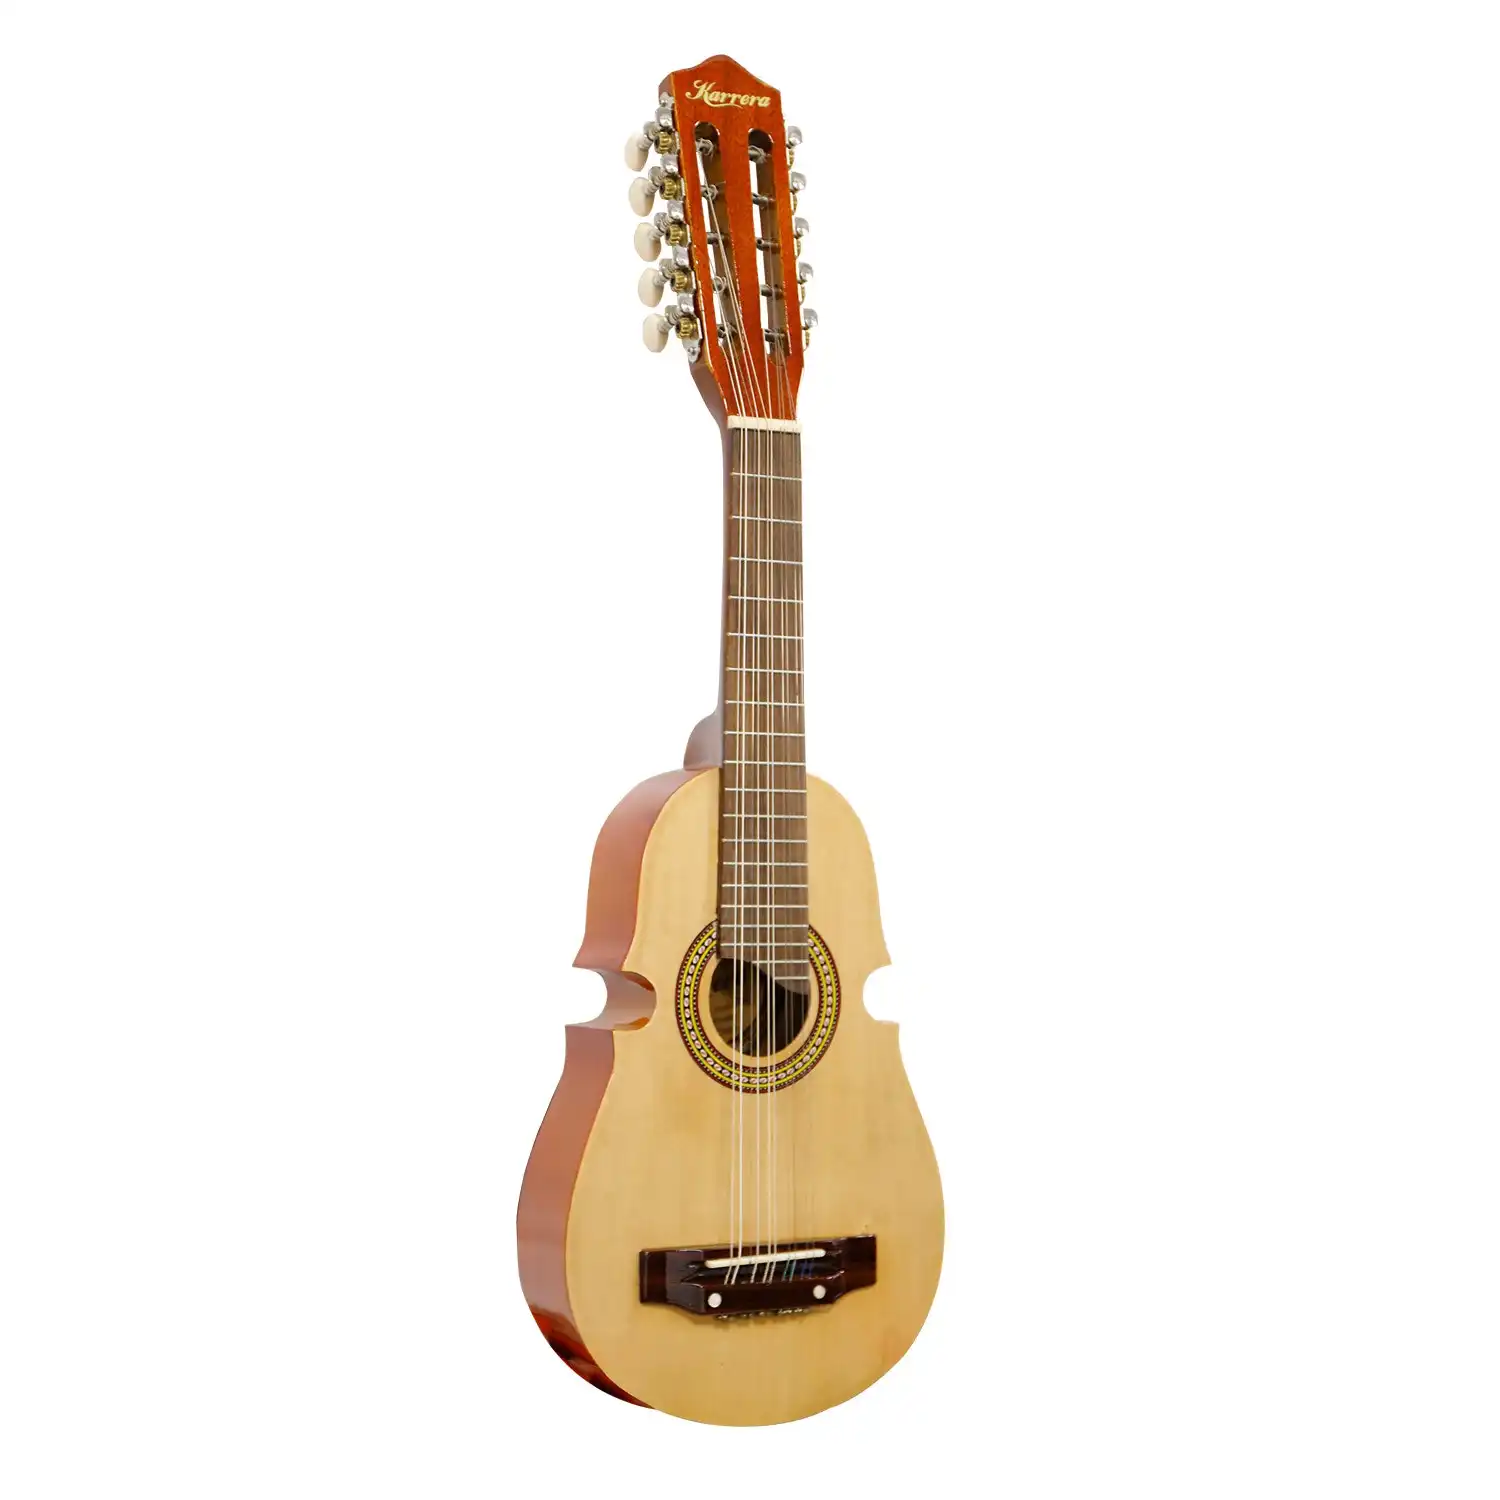 Karrera 25in Cuatro Guitar 10-String Acoustic Guitar - Natural